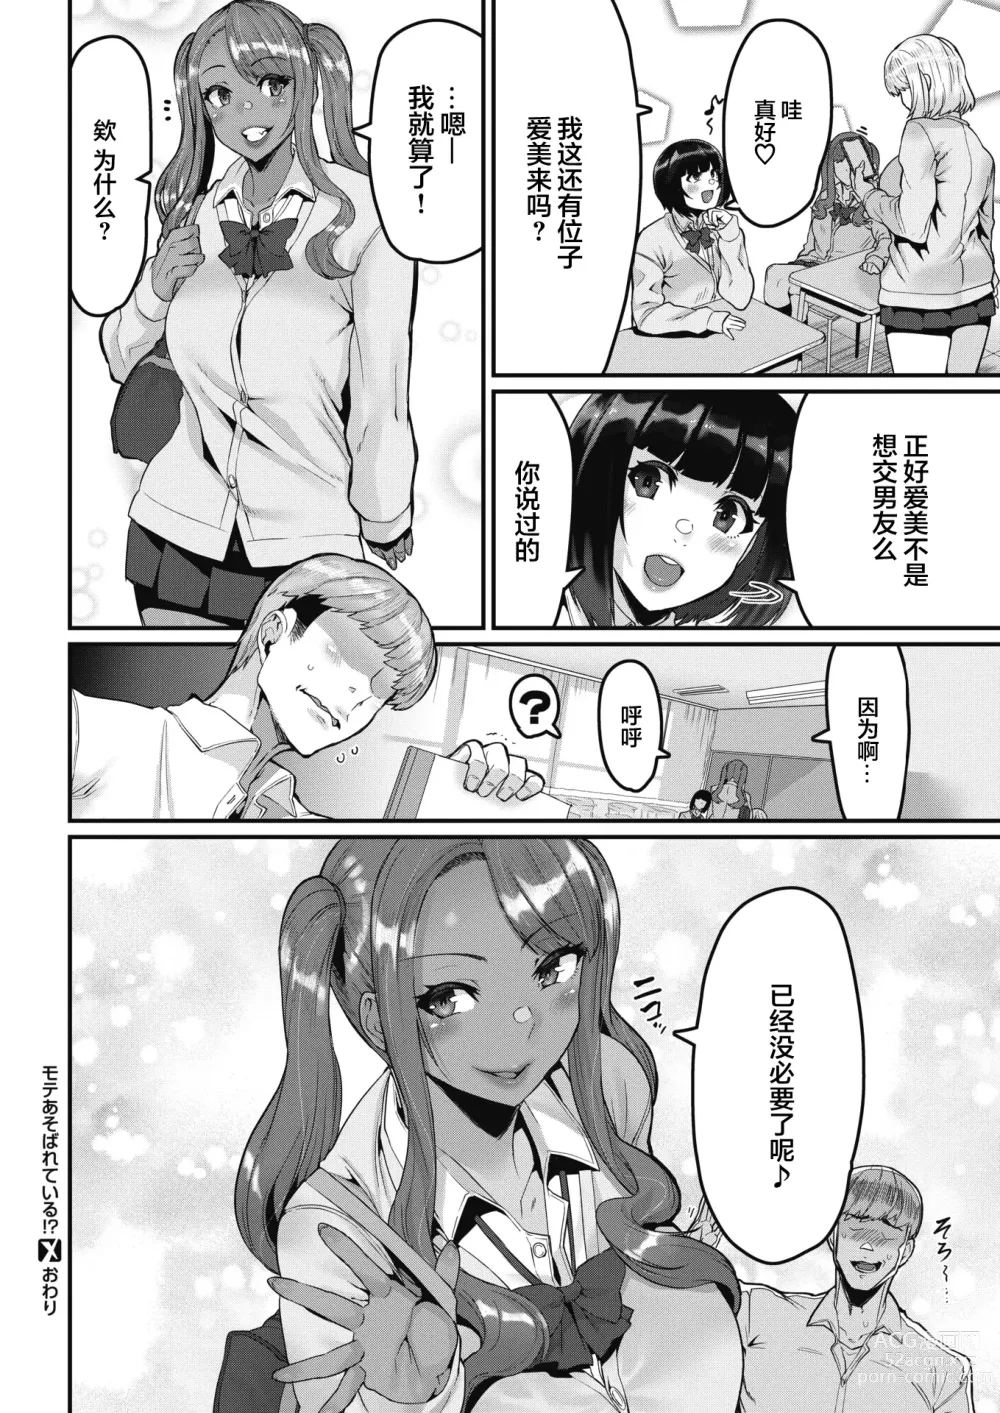 Page 26 of manga Moteasobareteiru!? (decensored)